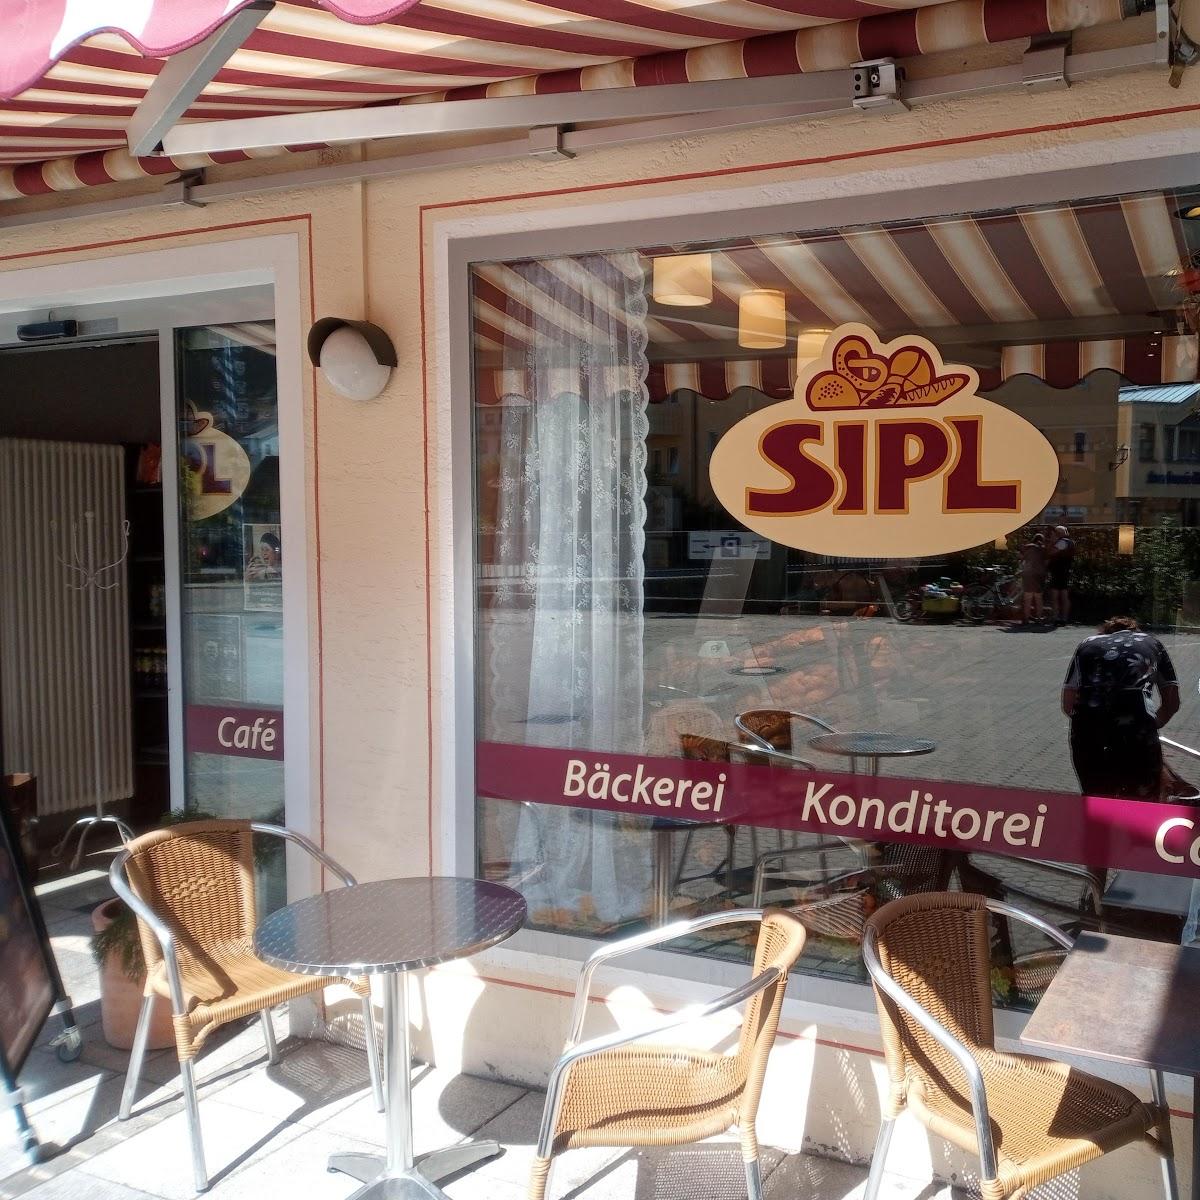 Restaurant "Sipl" in Altmannstein